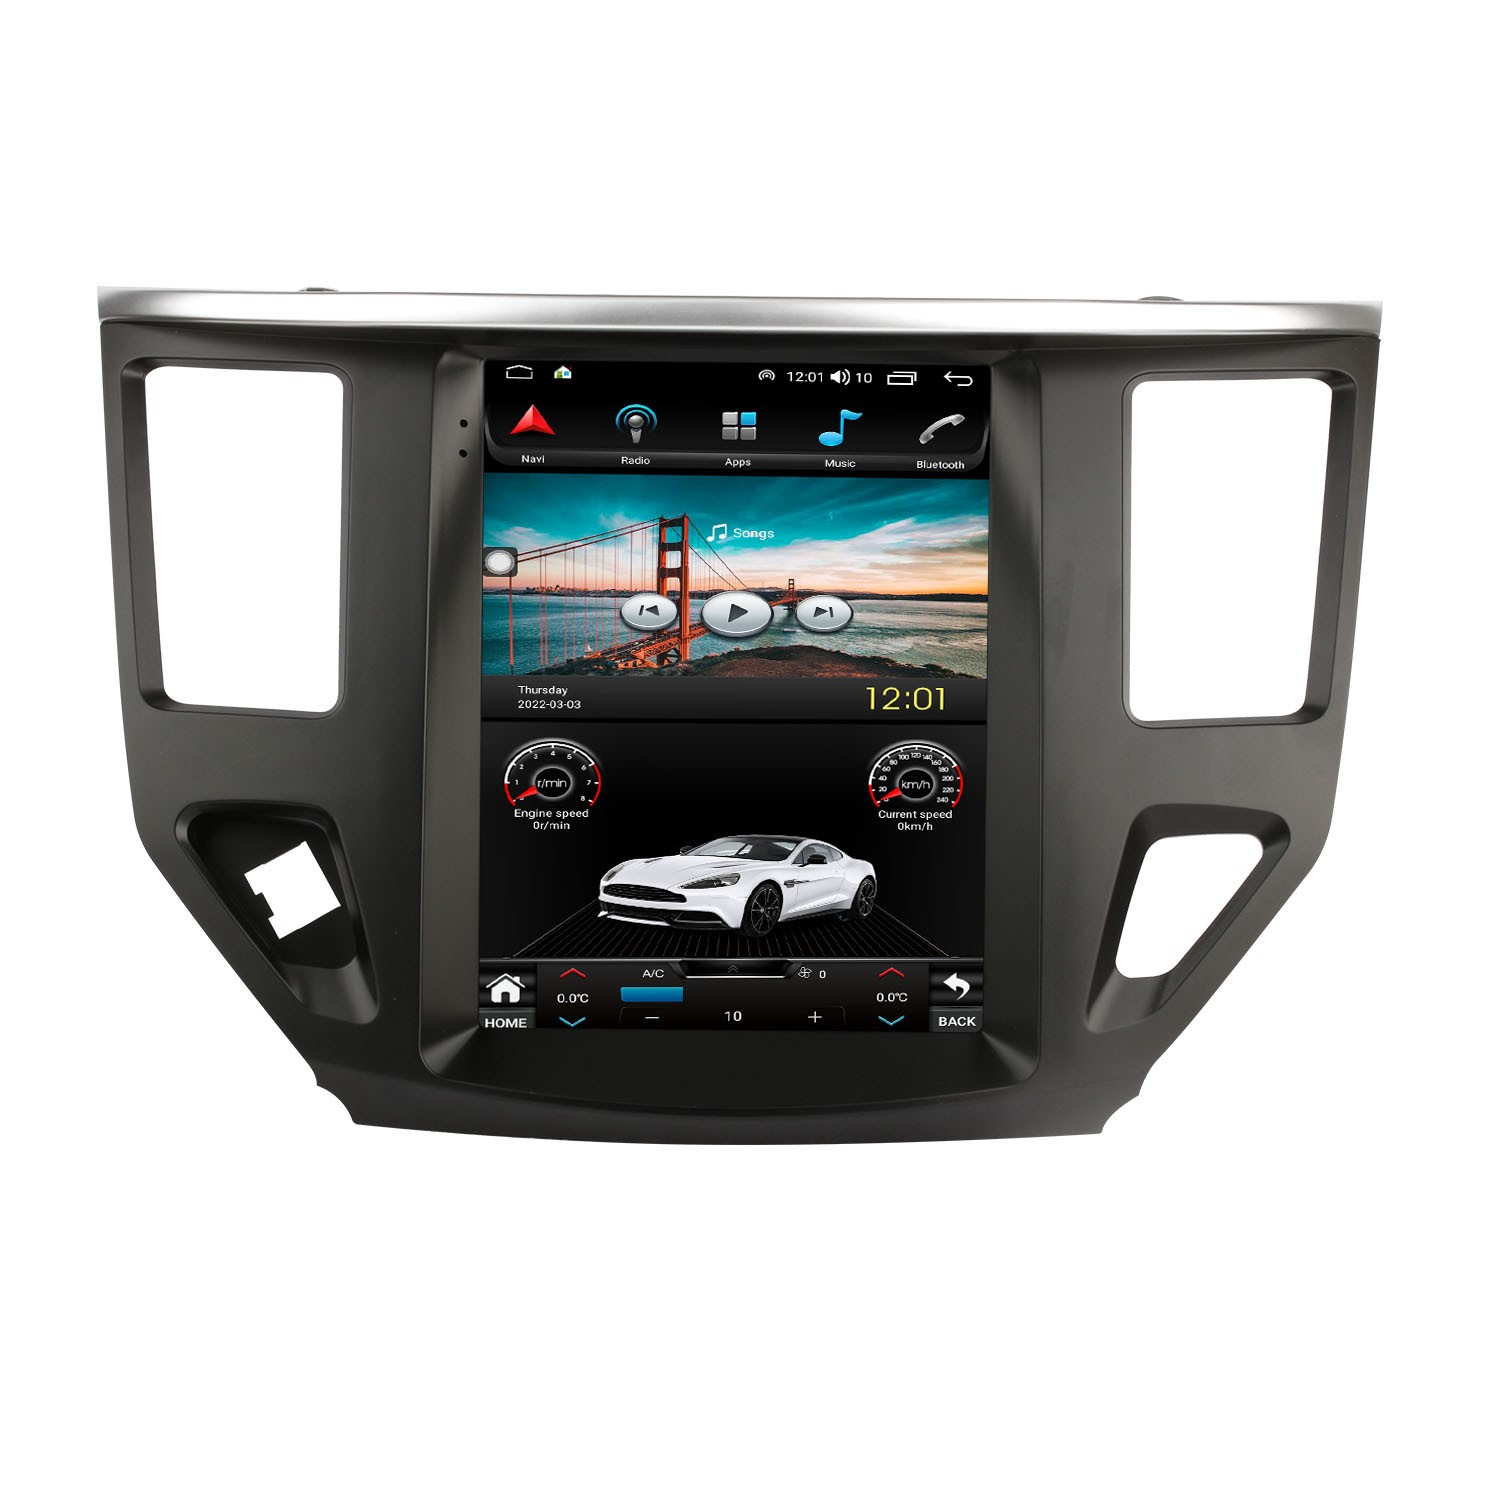 Añade a tu coche una radio 2 DIN con pantalla tipo Tesla de 10